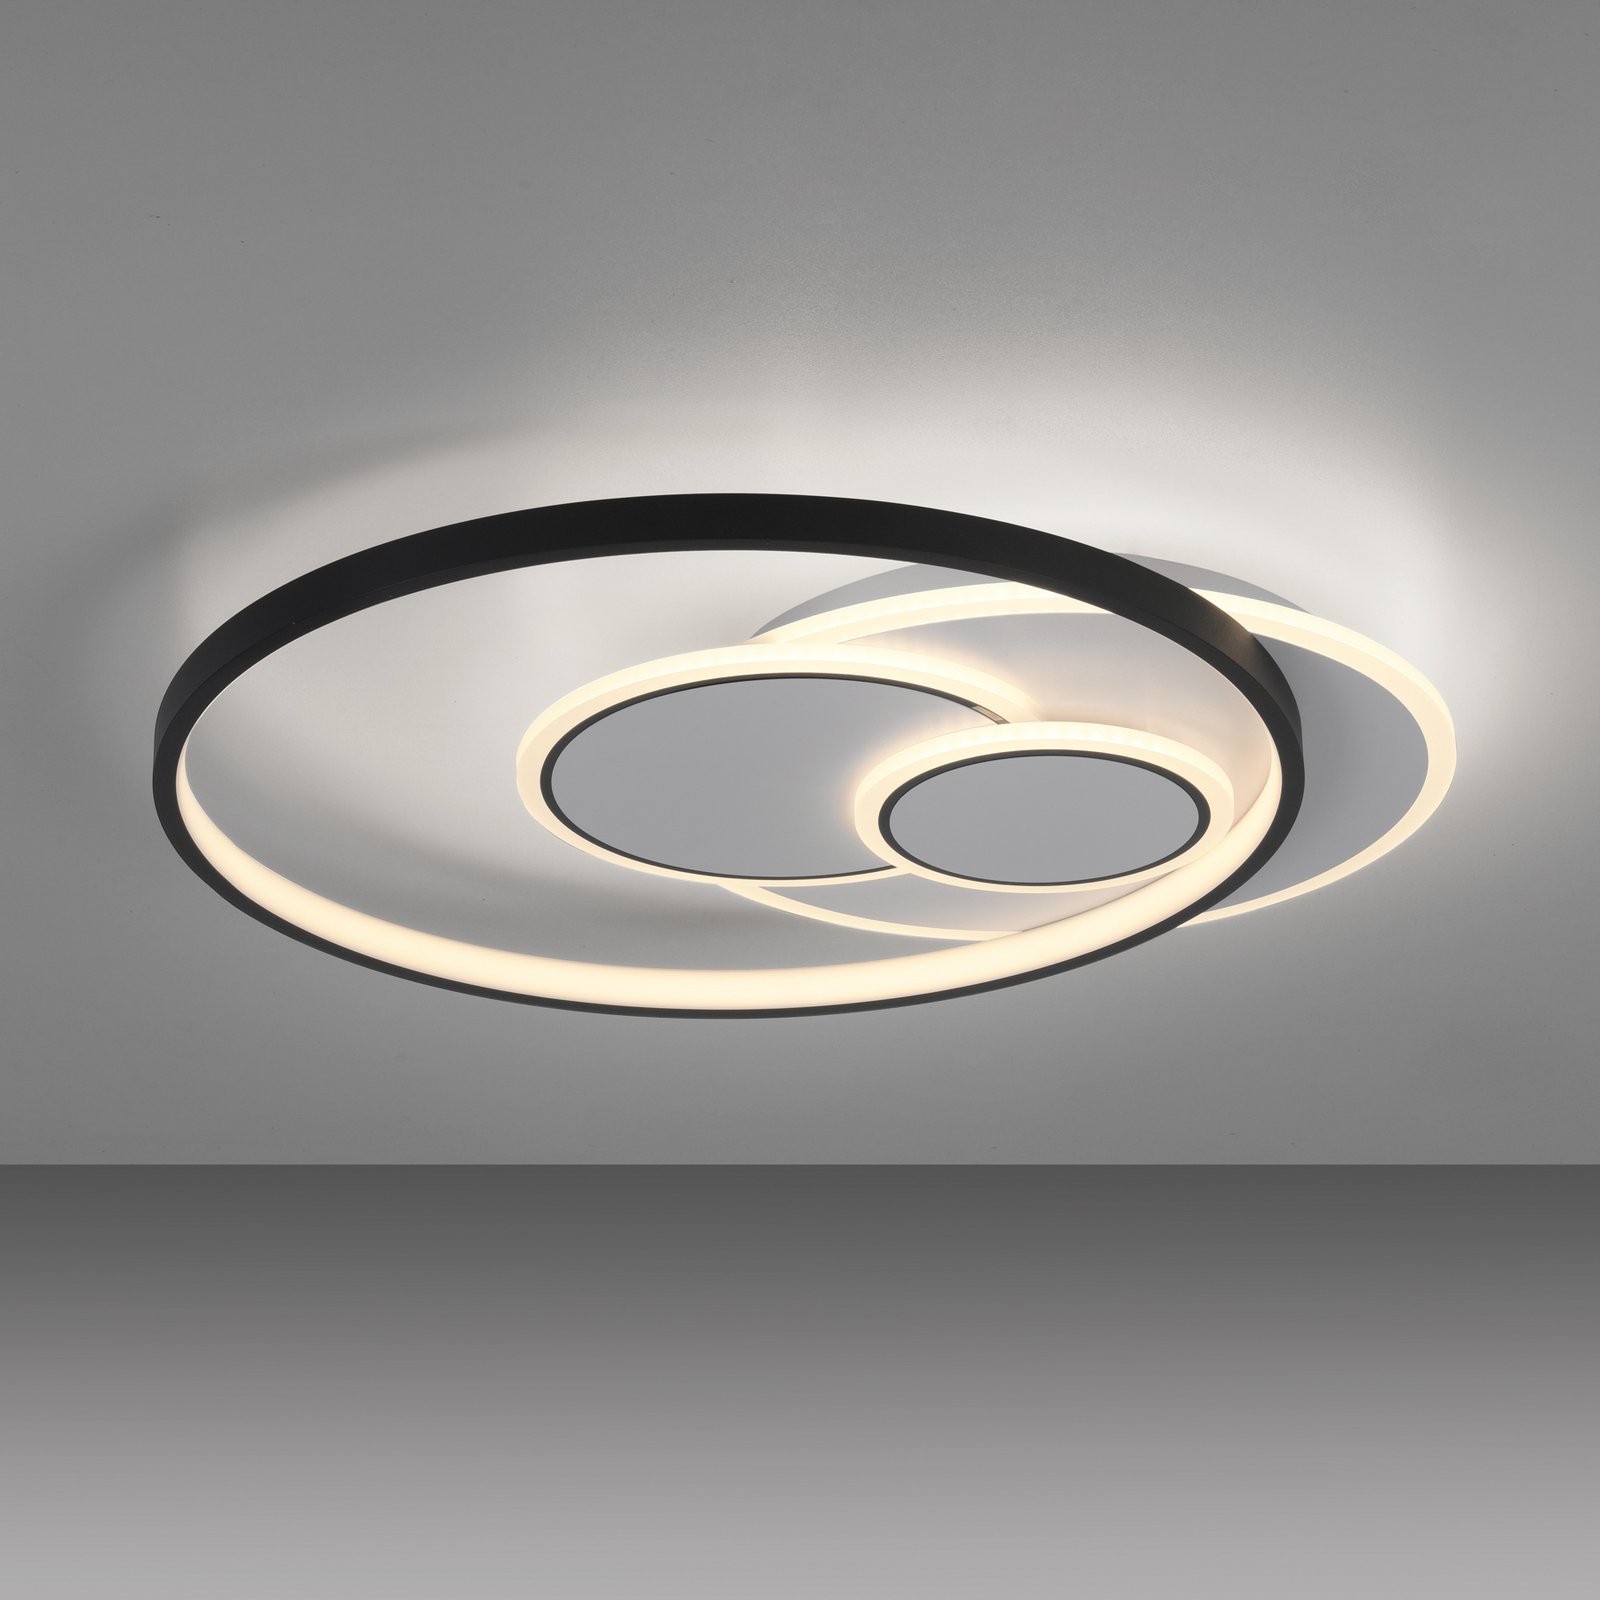 Paul Neuhaus Mailak LED plafondlamp, rond